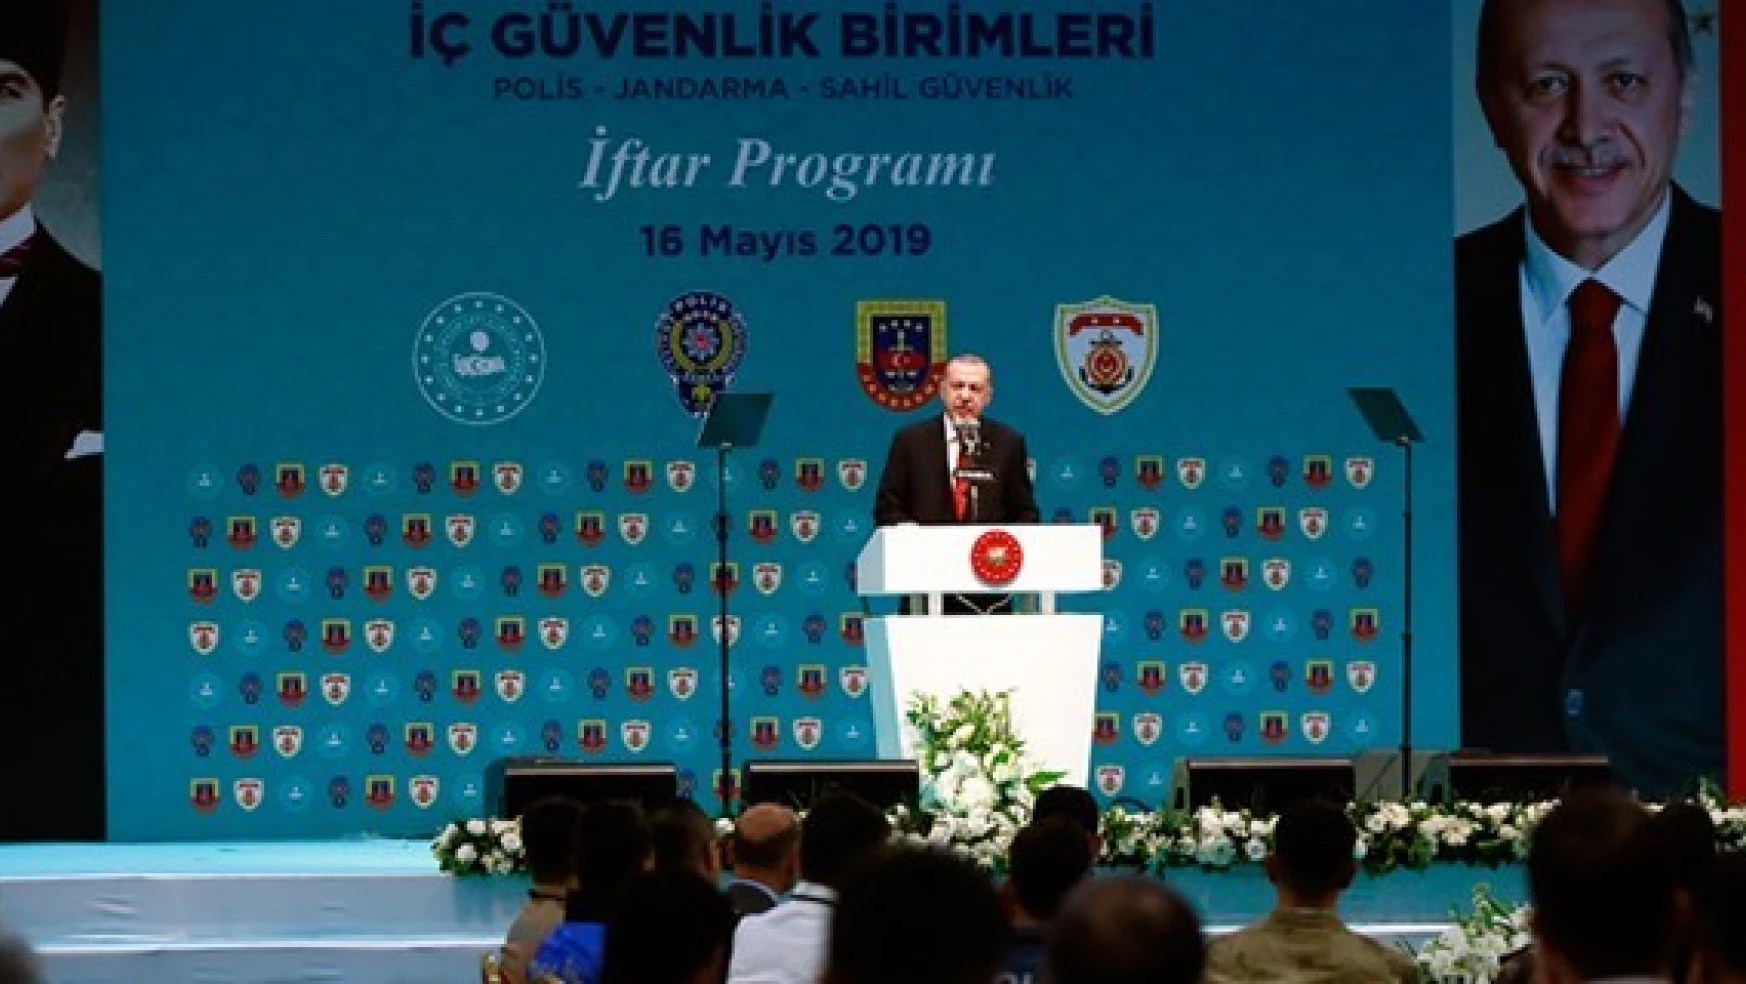 Erdoğan: 'Unutmayalım ki bu ülke hepimizin ortak vatanıdır'